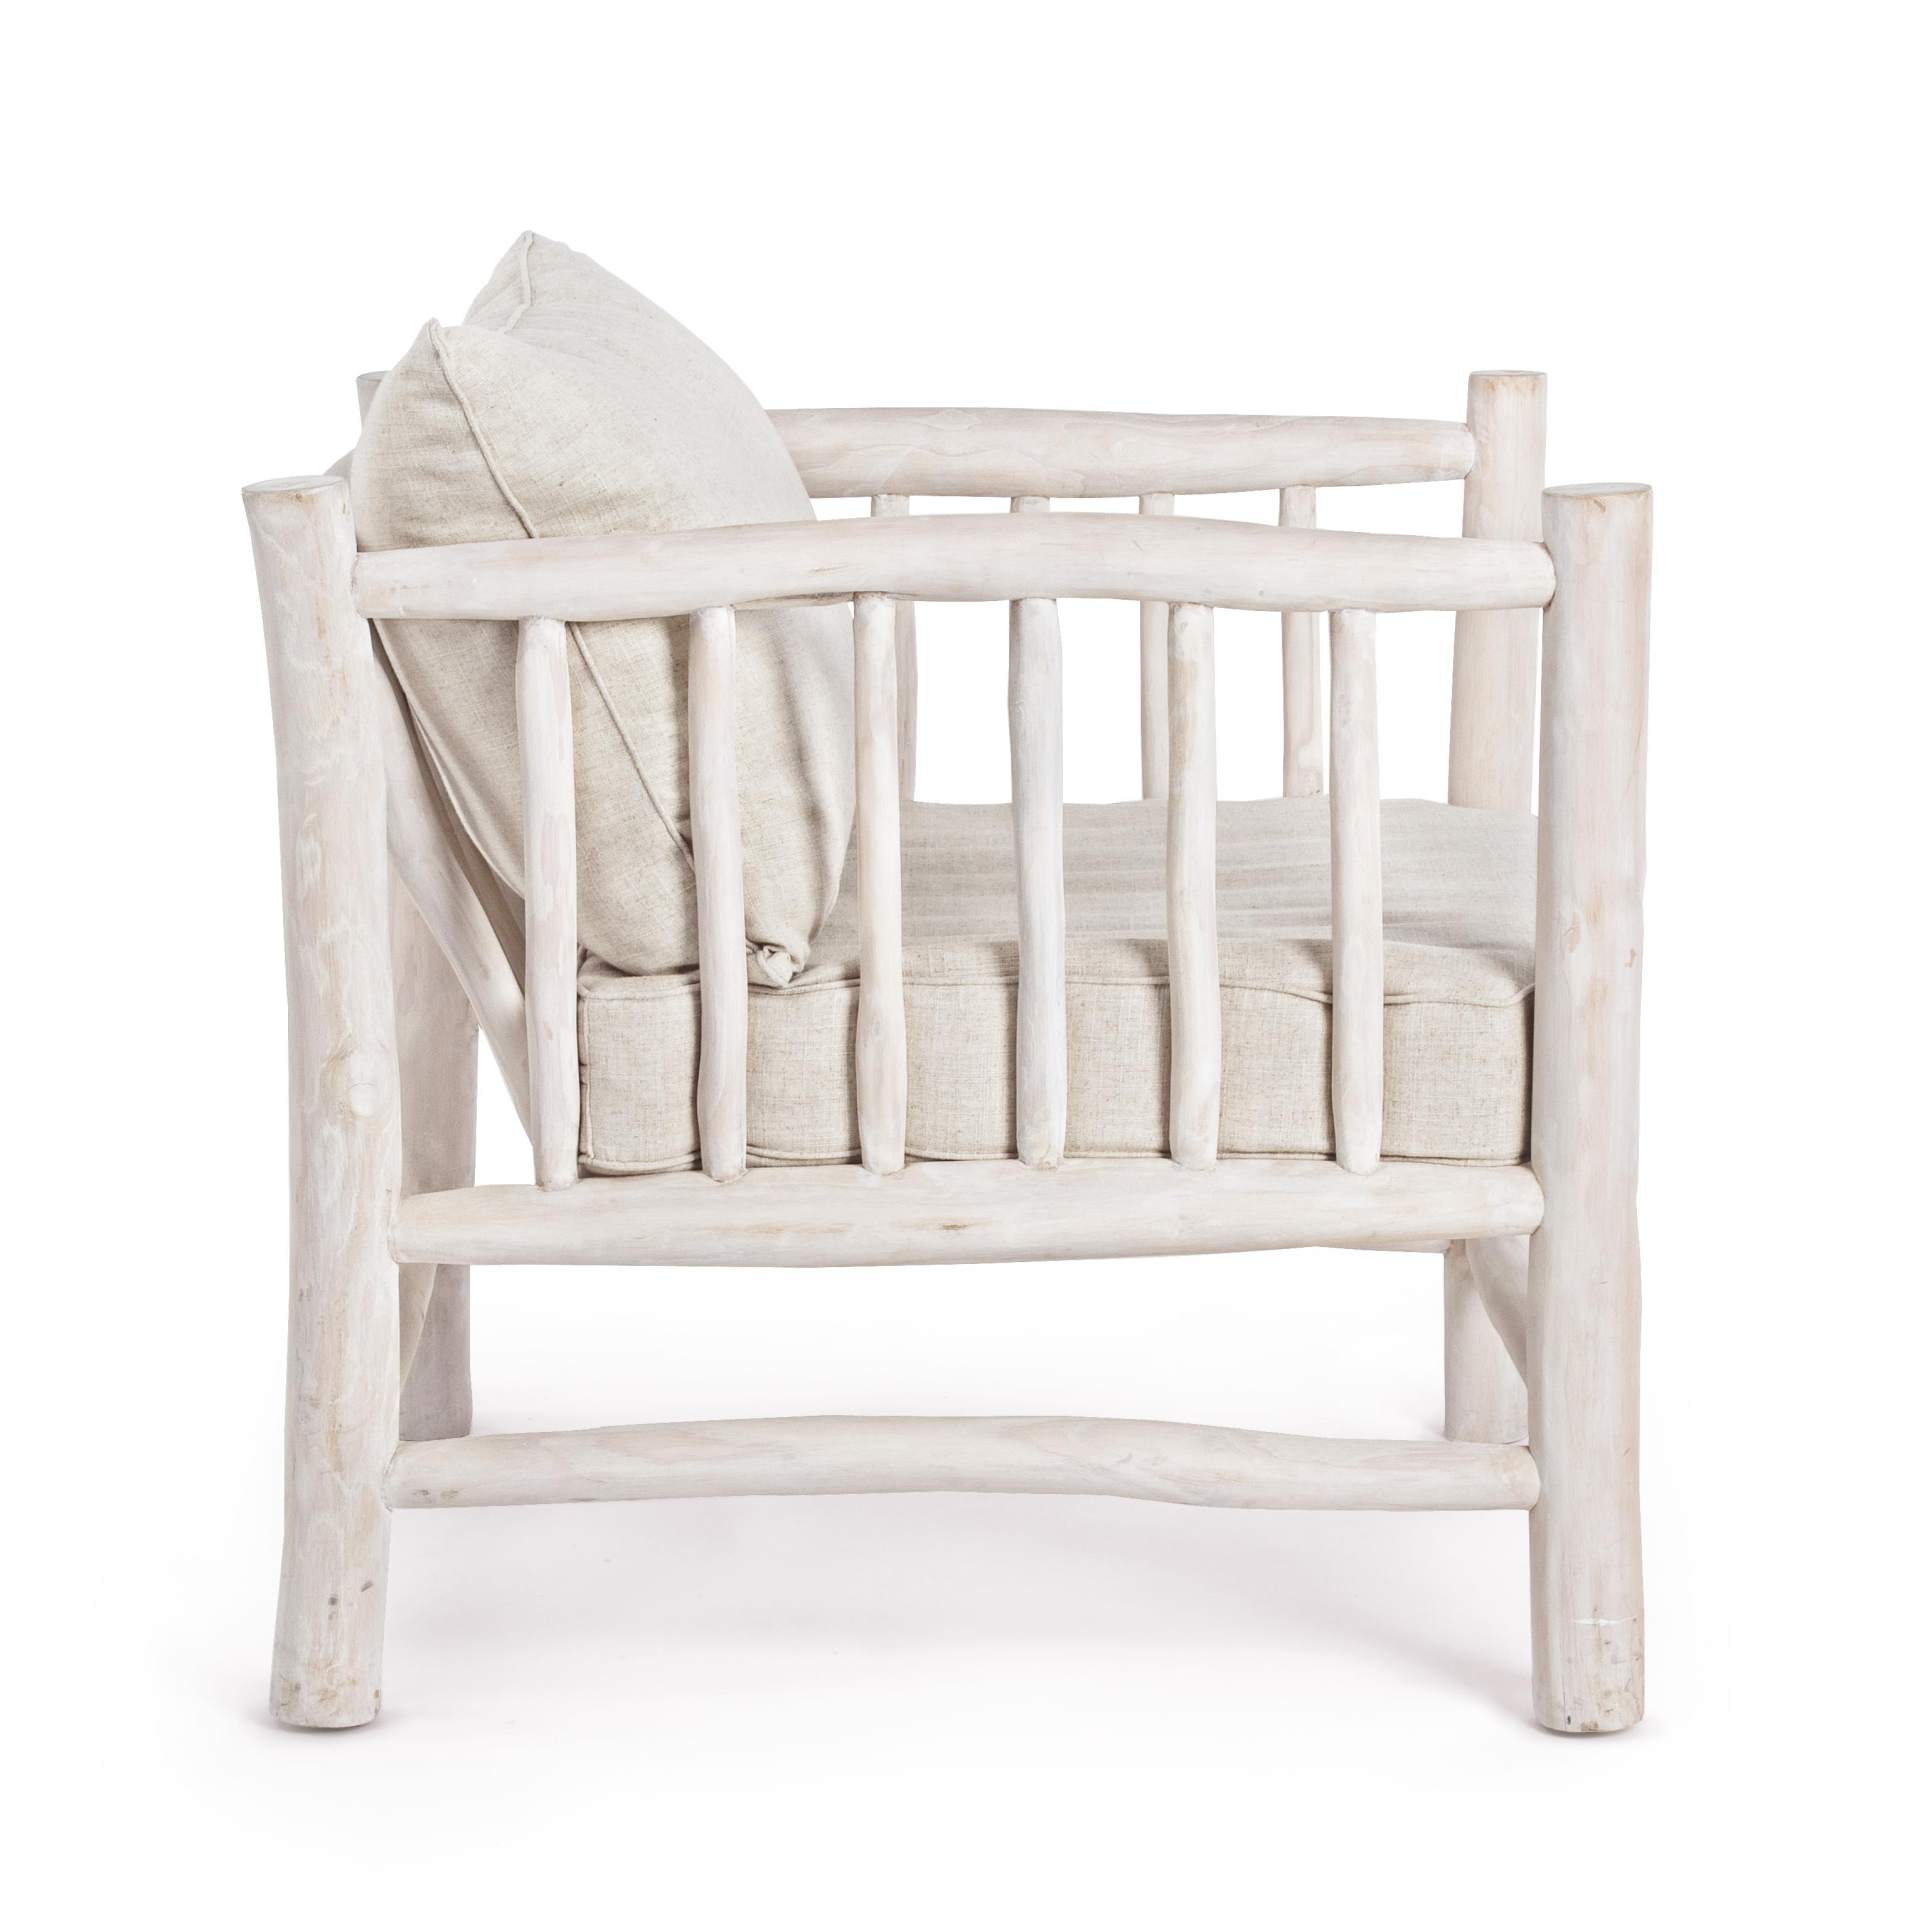 Der Sessel Sahel überzeugt mit seinem klassischen Design. Gefertigt wurde er aus Teakholz, welches einen weißen Farbton besitzt. Die Kissen sind aus einem Mix aus Baumwolle und Leinen. Der Sessel besitzt eine Sitzhöhe von 43 cm. Die Breite beträgt 70 cm.